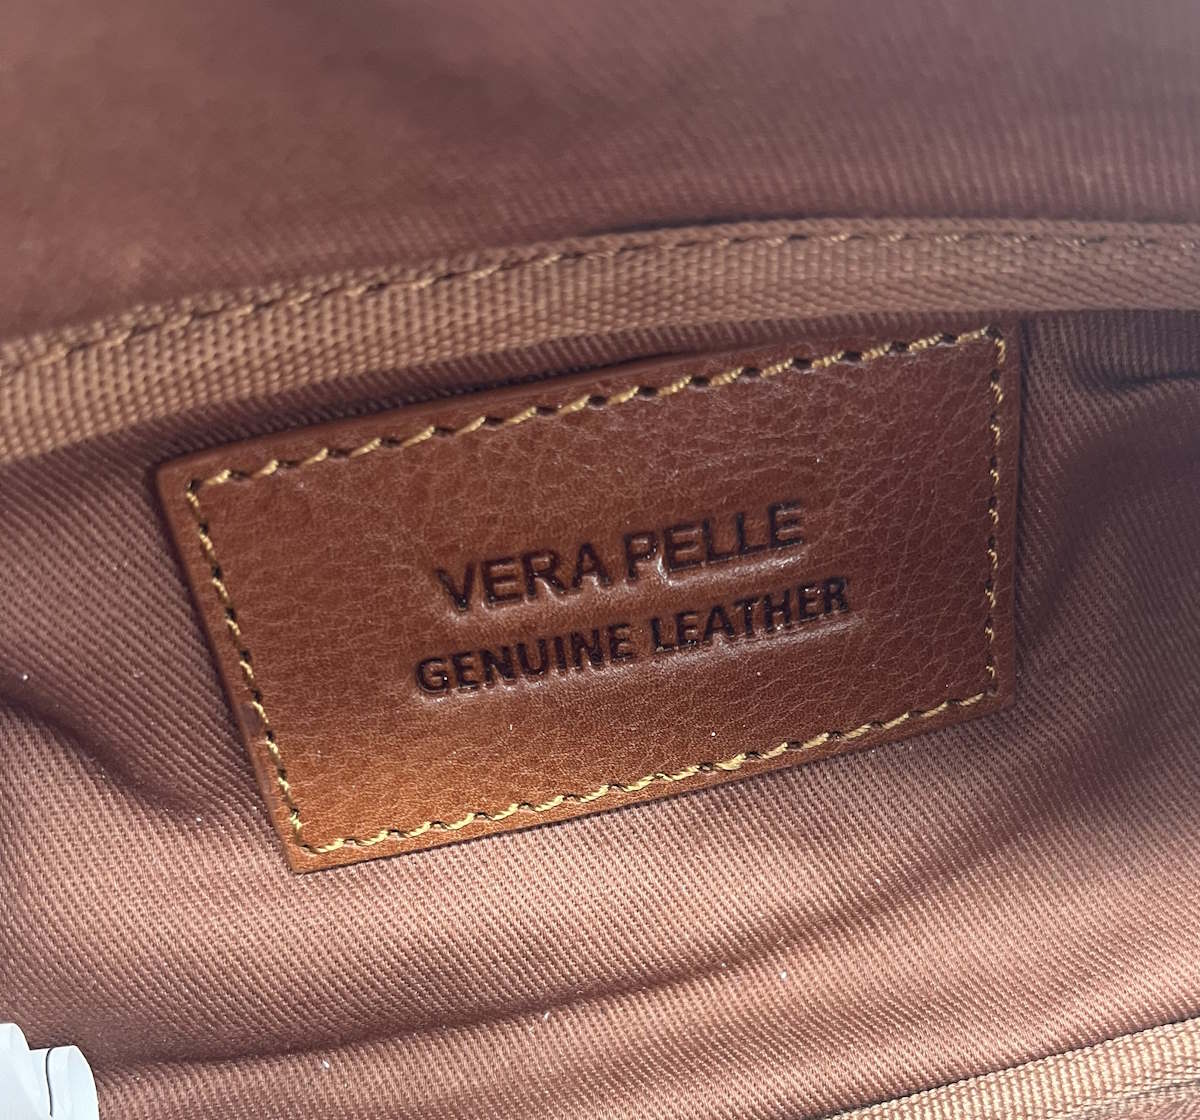 Genuine Leather waist bag, for men, art. VE4803